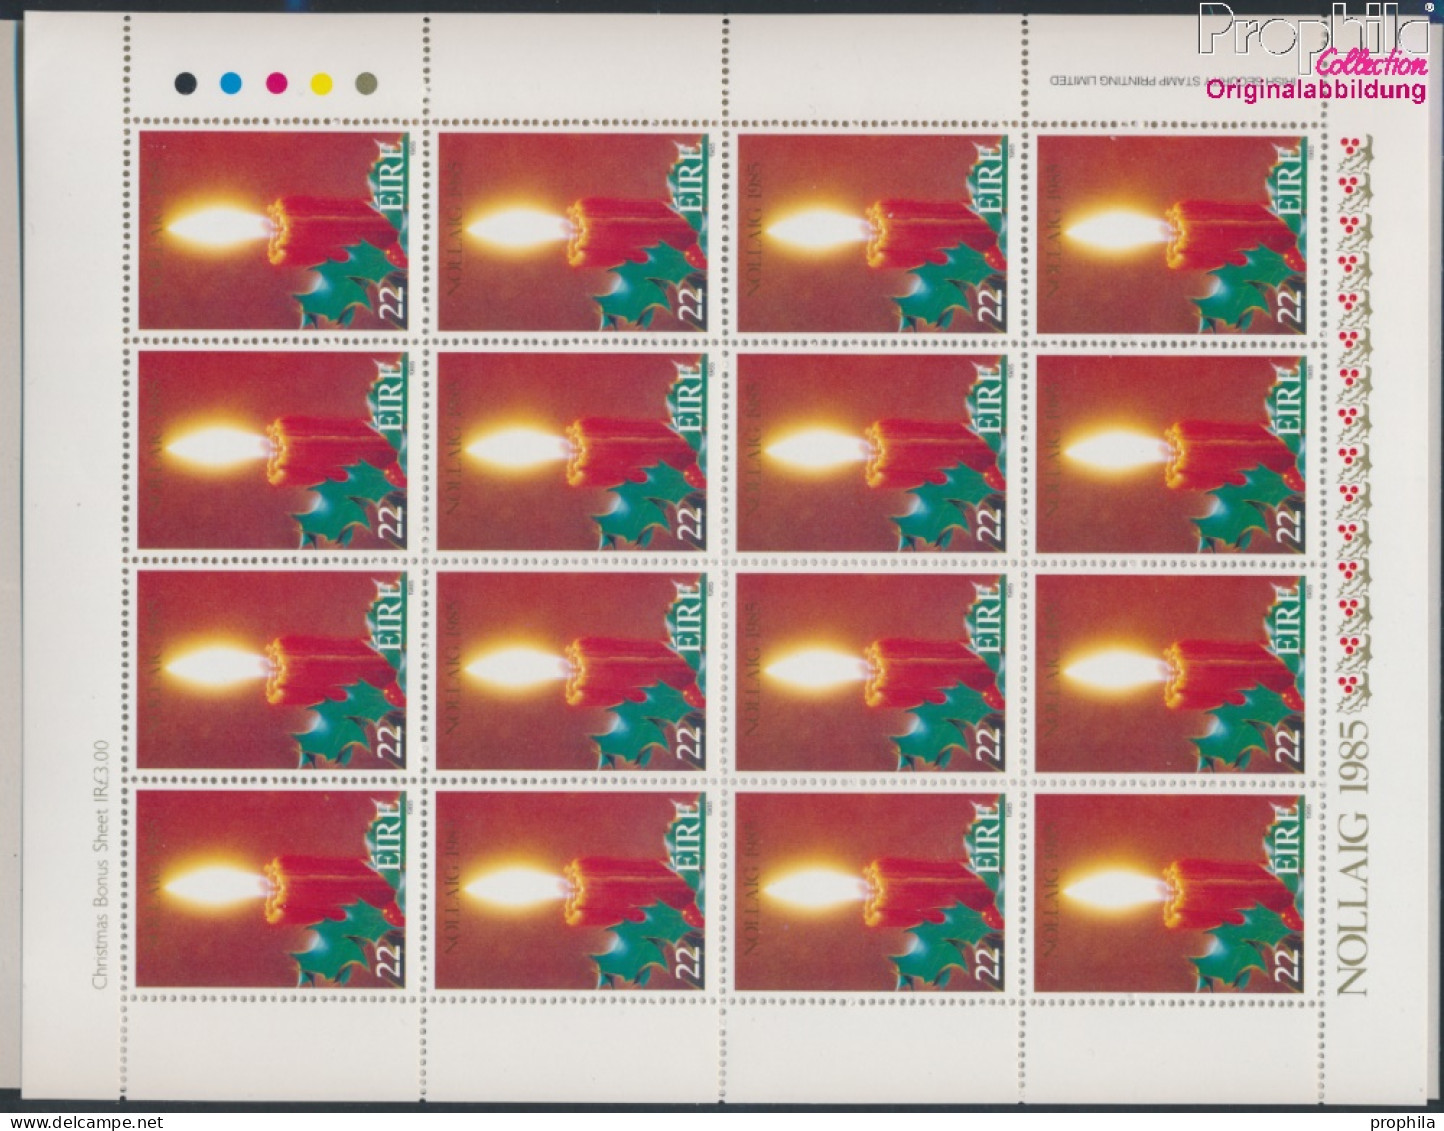 Irland 583Klb Kleinbogen (kompl.Ausg.) Postfrisch 1985 Weihnachten (10368222 - Unused Stamps